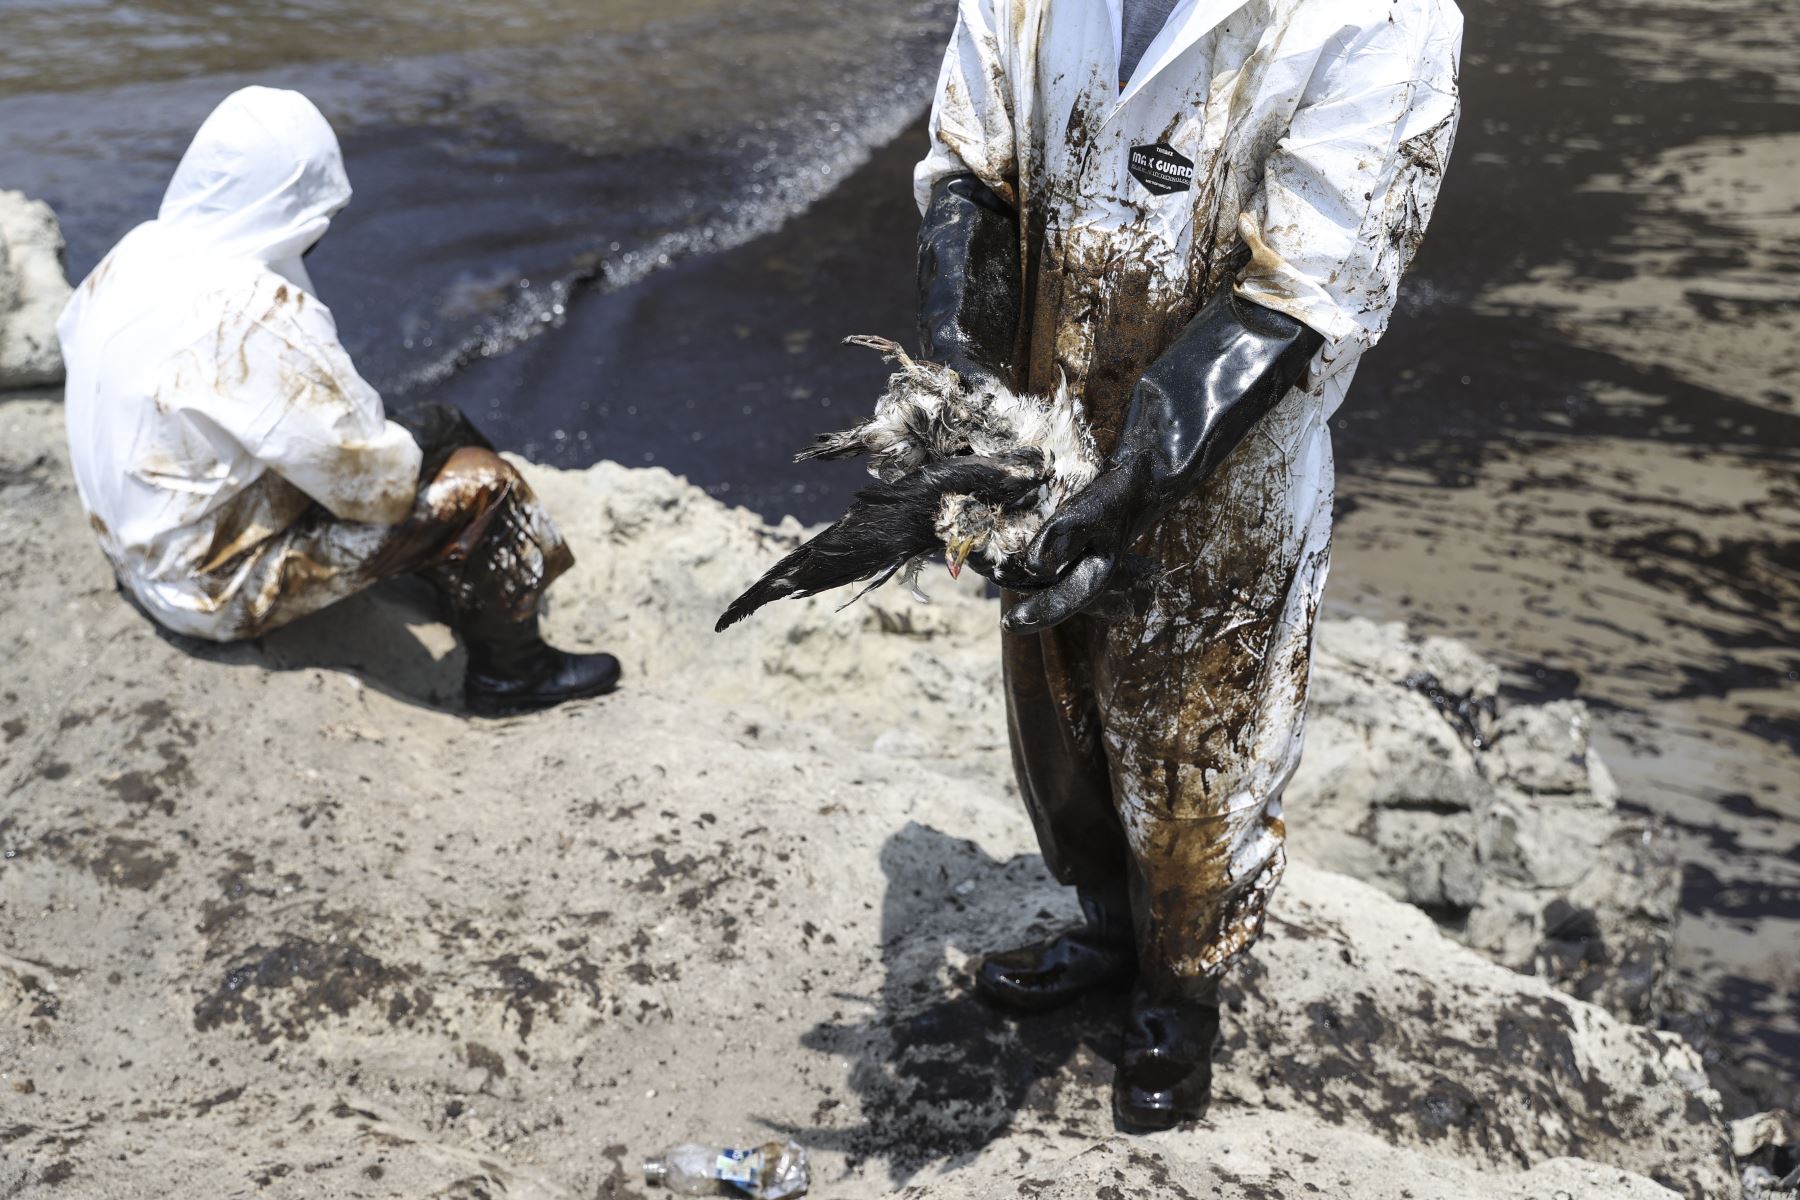 Un trabajador de limpieza muestra el cuerpo de un ave afectada por el derrame de petróleo en Ventanilla. Las autoridades ambientales alertaron que el área contaminada por el crudo incluye zonas bajo protección especial por parte del Estado, en una extensión calculada en 18,000 kilómetros cuadrados. ANDINA/Jhonel Rodríguez Robles